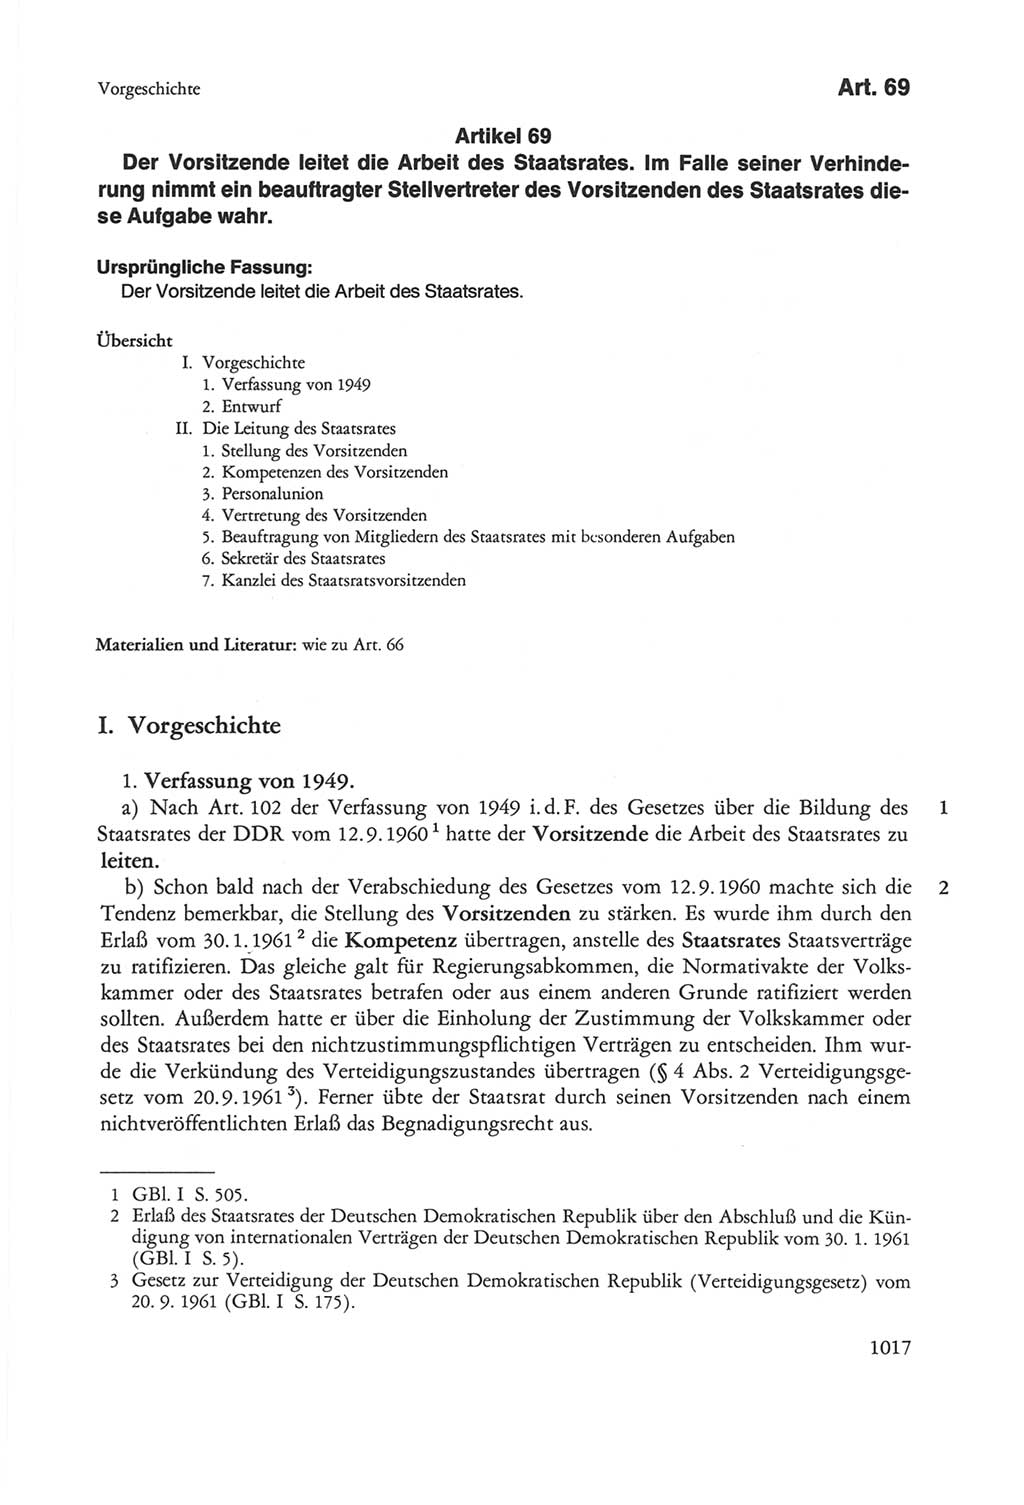 Die sozialistische Verfassung der Deutschen Demokratischen Republik (DDR), Kommentar mit einem Nachtrag 1997, Seite 1017 (Soz. Verf. DDR Komm. Nachtr. 1997, S. 1017)